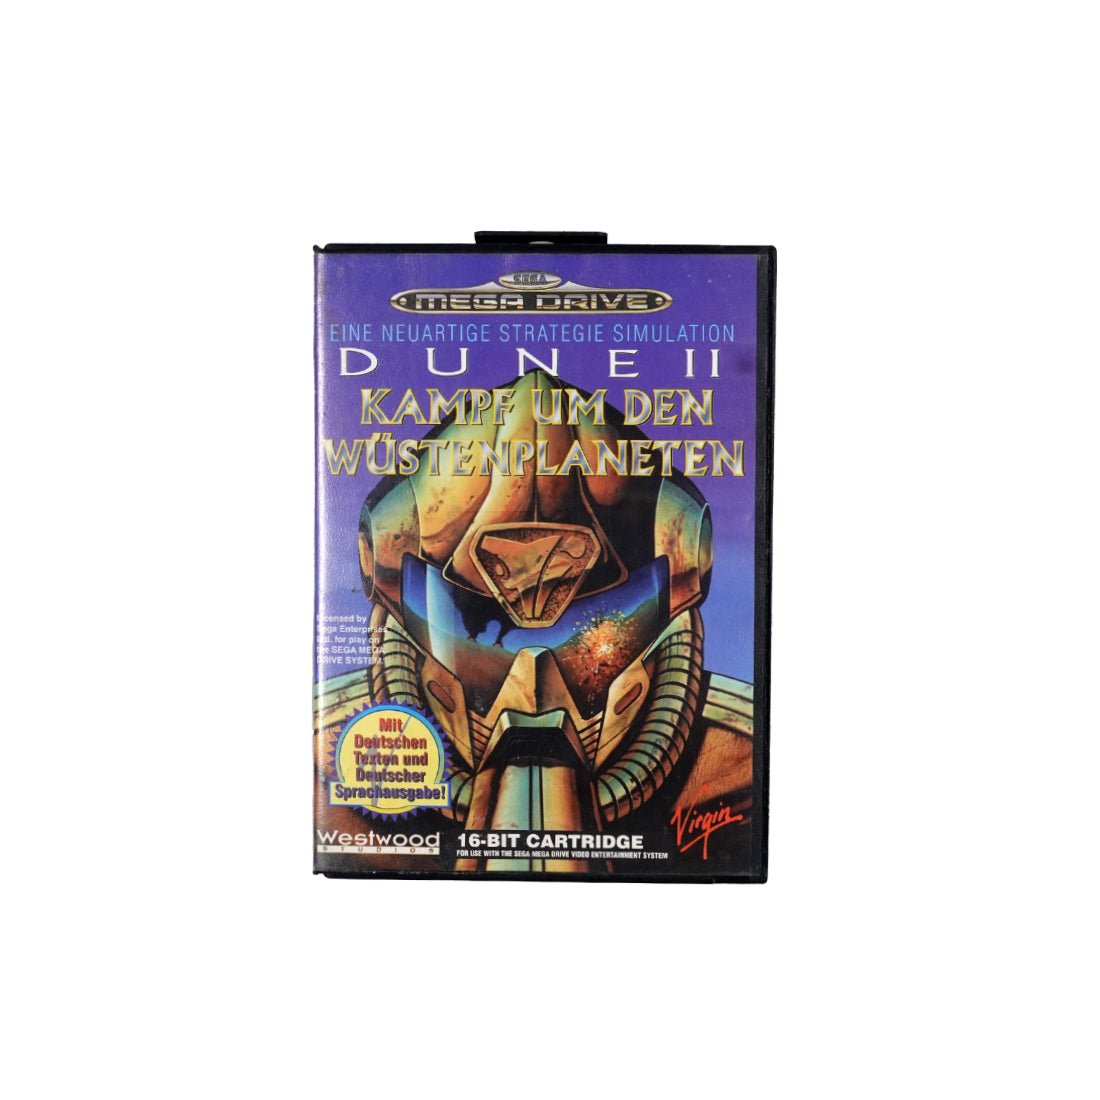 (Pre-Owned) Dune II: German Edition - Sega - Store 974 | ستور ٩٧٤